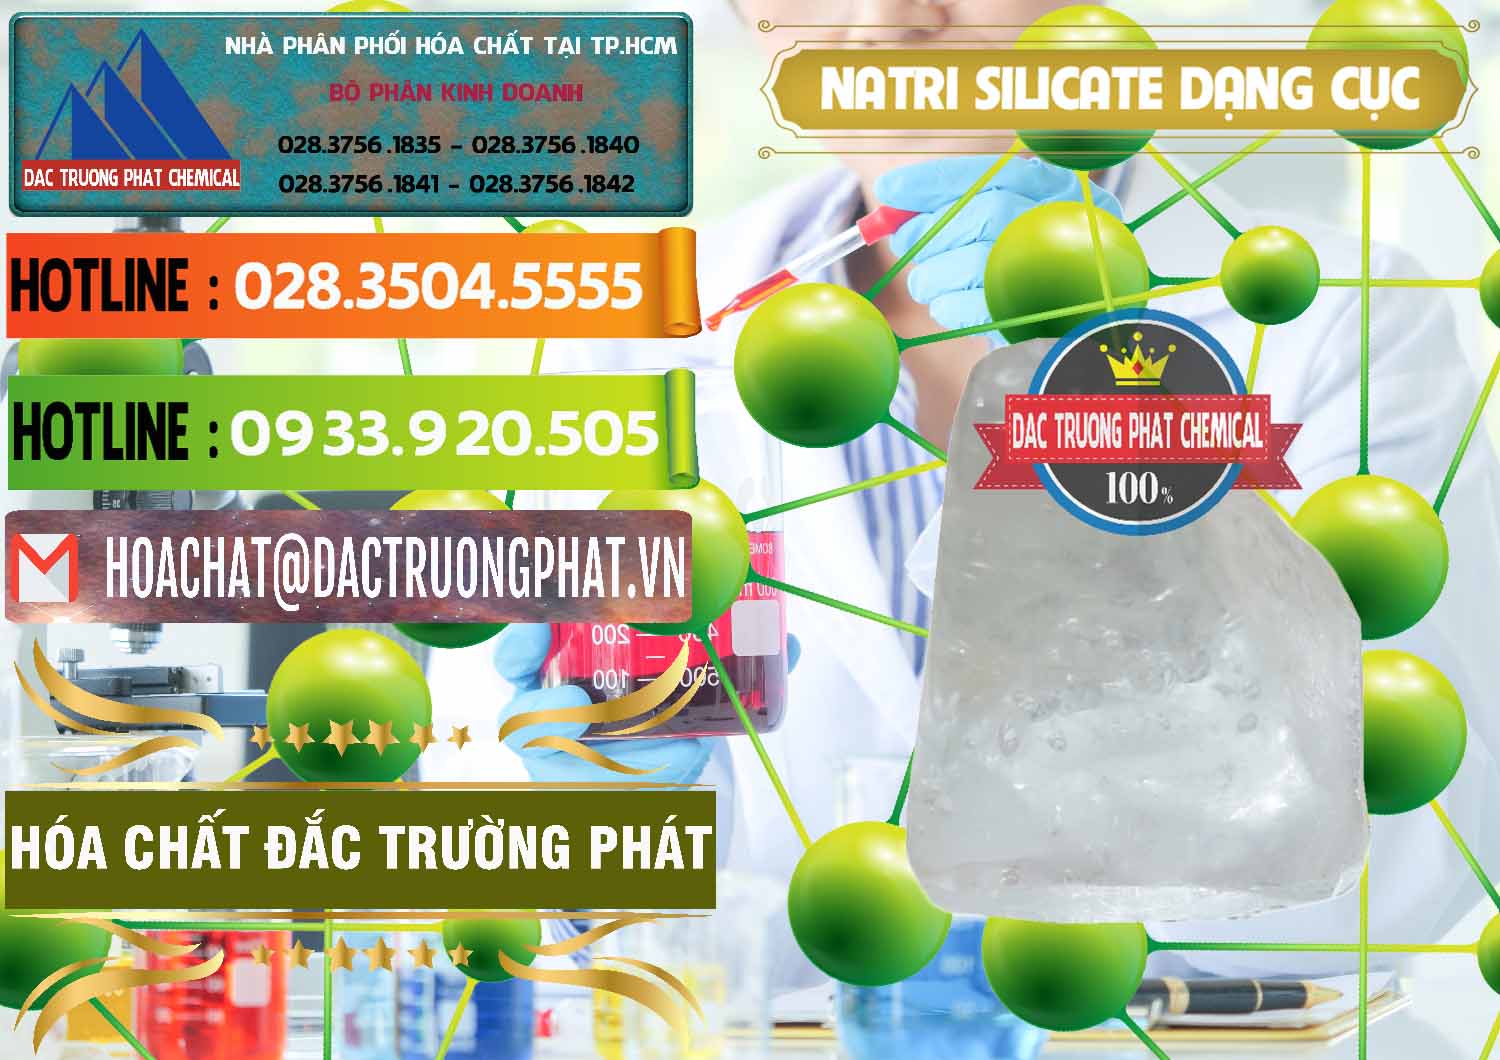 Nơi chuyên bán & phân phối Natri Silicate - Na2SiO3 - Keo Silicate Dạng Cục Ấn Độ India - 0382 - Công ty chuyên bán _ phân phối hóa chất tại TP.HCM - cungcaphoachat.com.vn